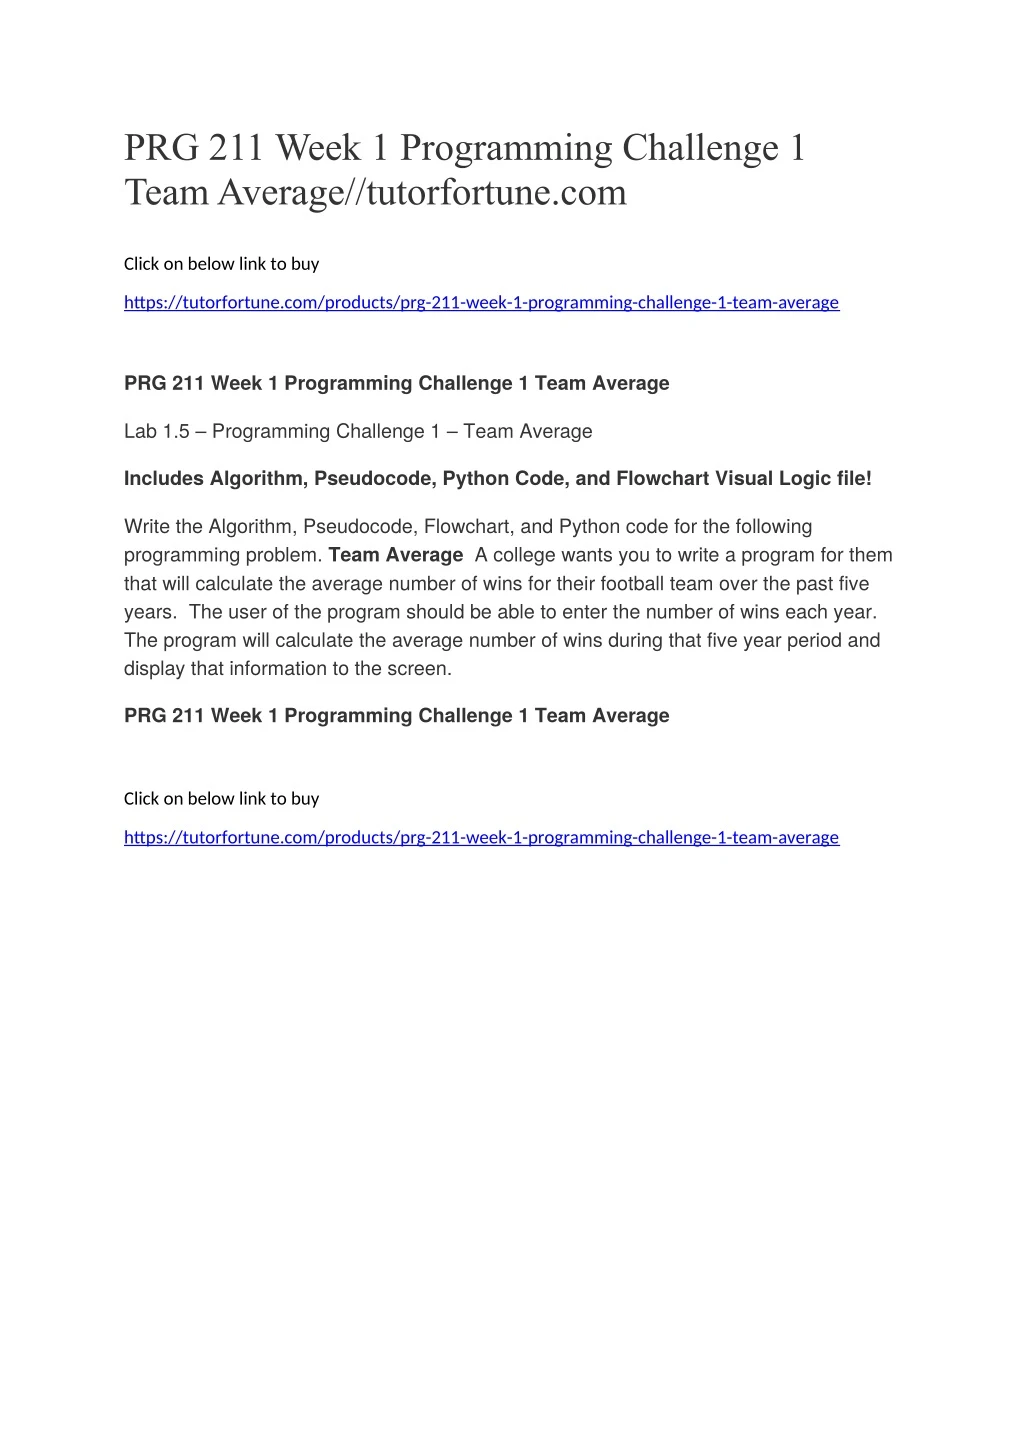 prg 211 week 1 programming challenge 1 team